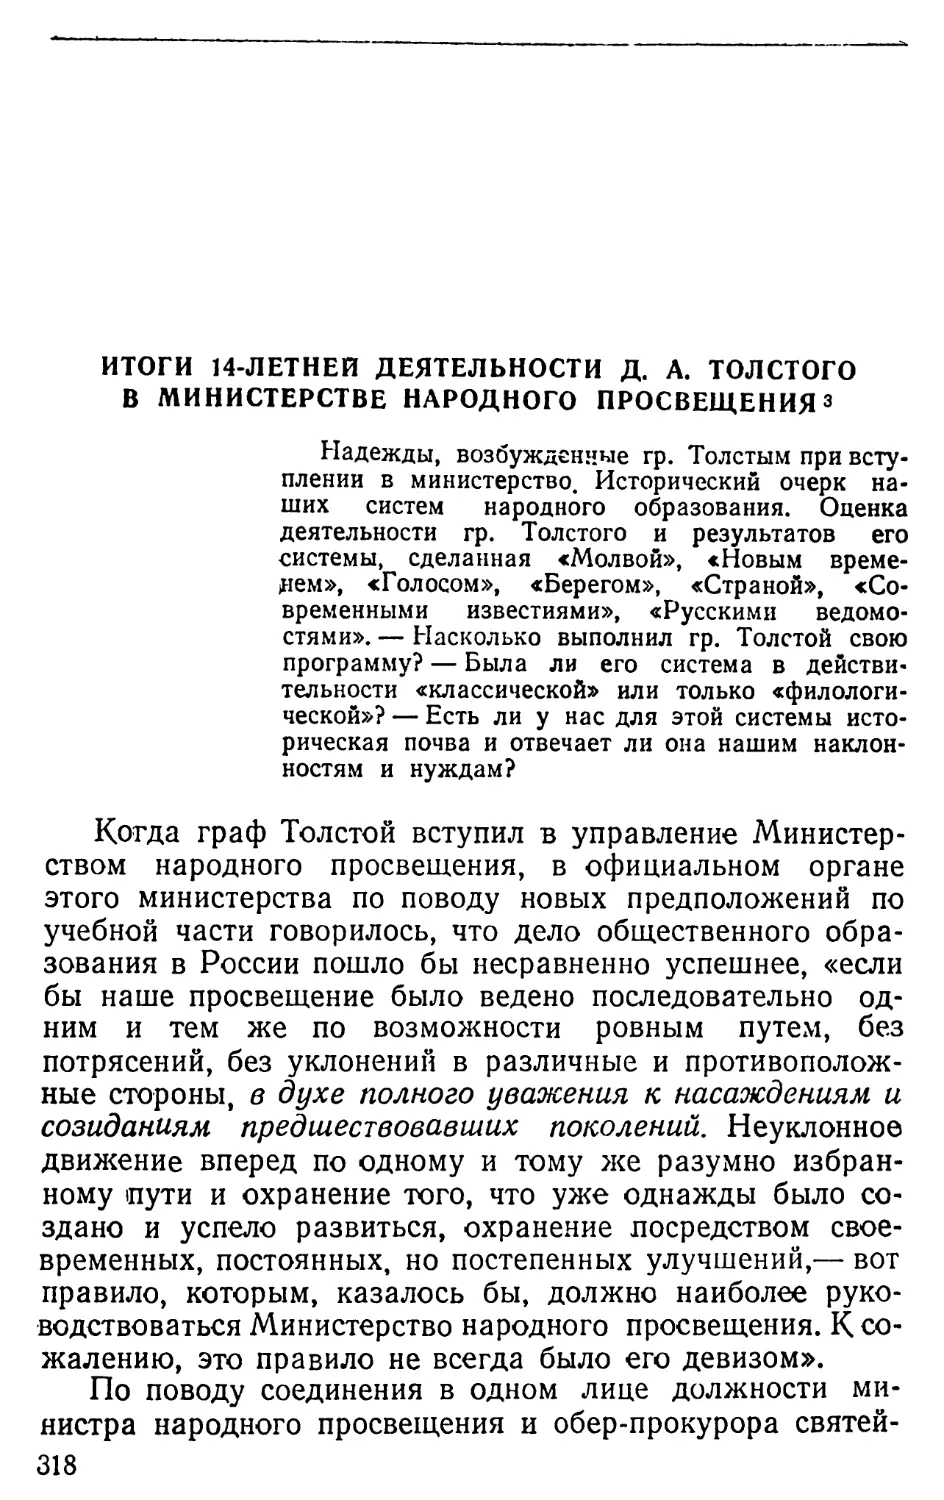 Итоги 14-летней деятельности Д.А. Толстого в Министерстве народного просвещения